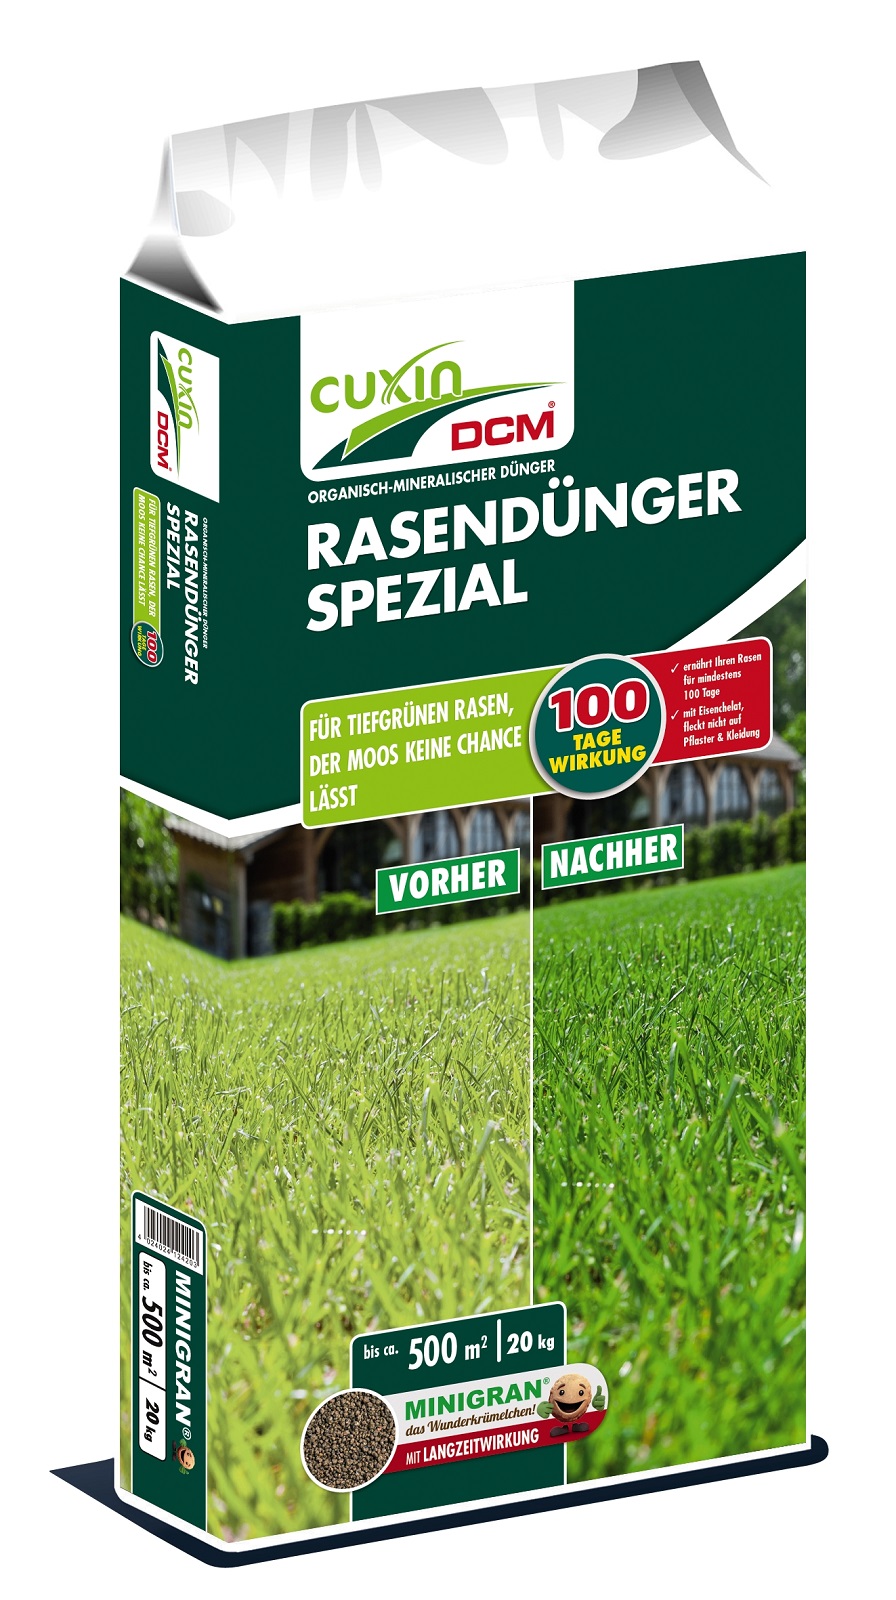 Cuxin DCM Rasendünger Spezial 20 kg